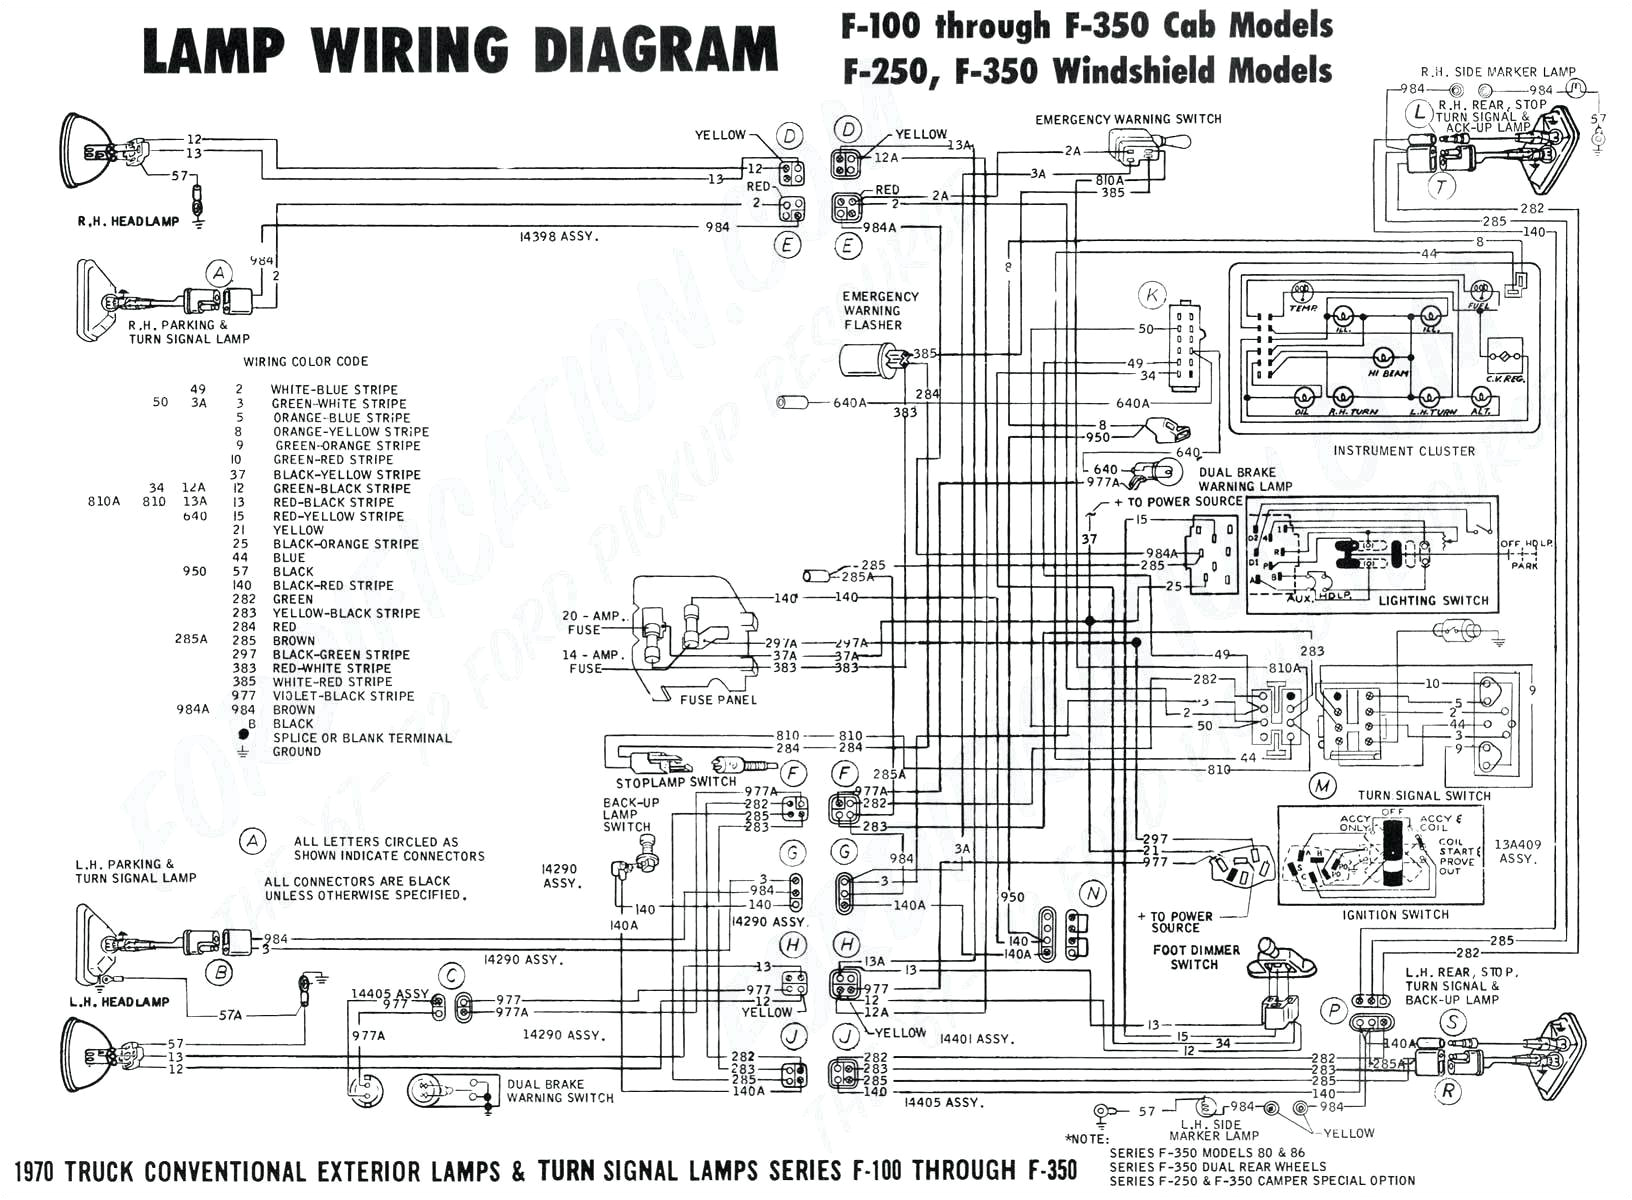 2003 saturn ion radio wiring diagram unique 2007 saturn ion radio wiring diagram new 2000 ford mustang stereo jpg